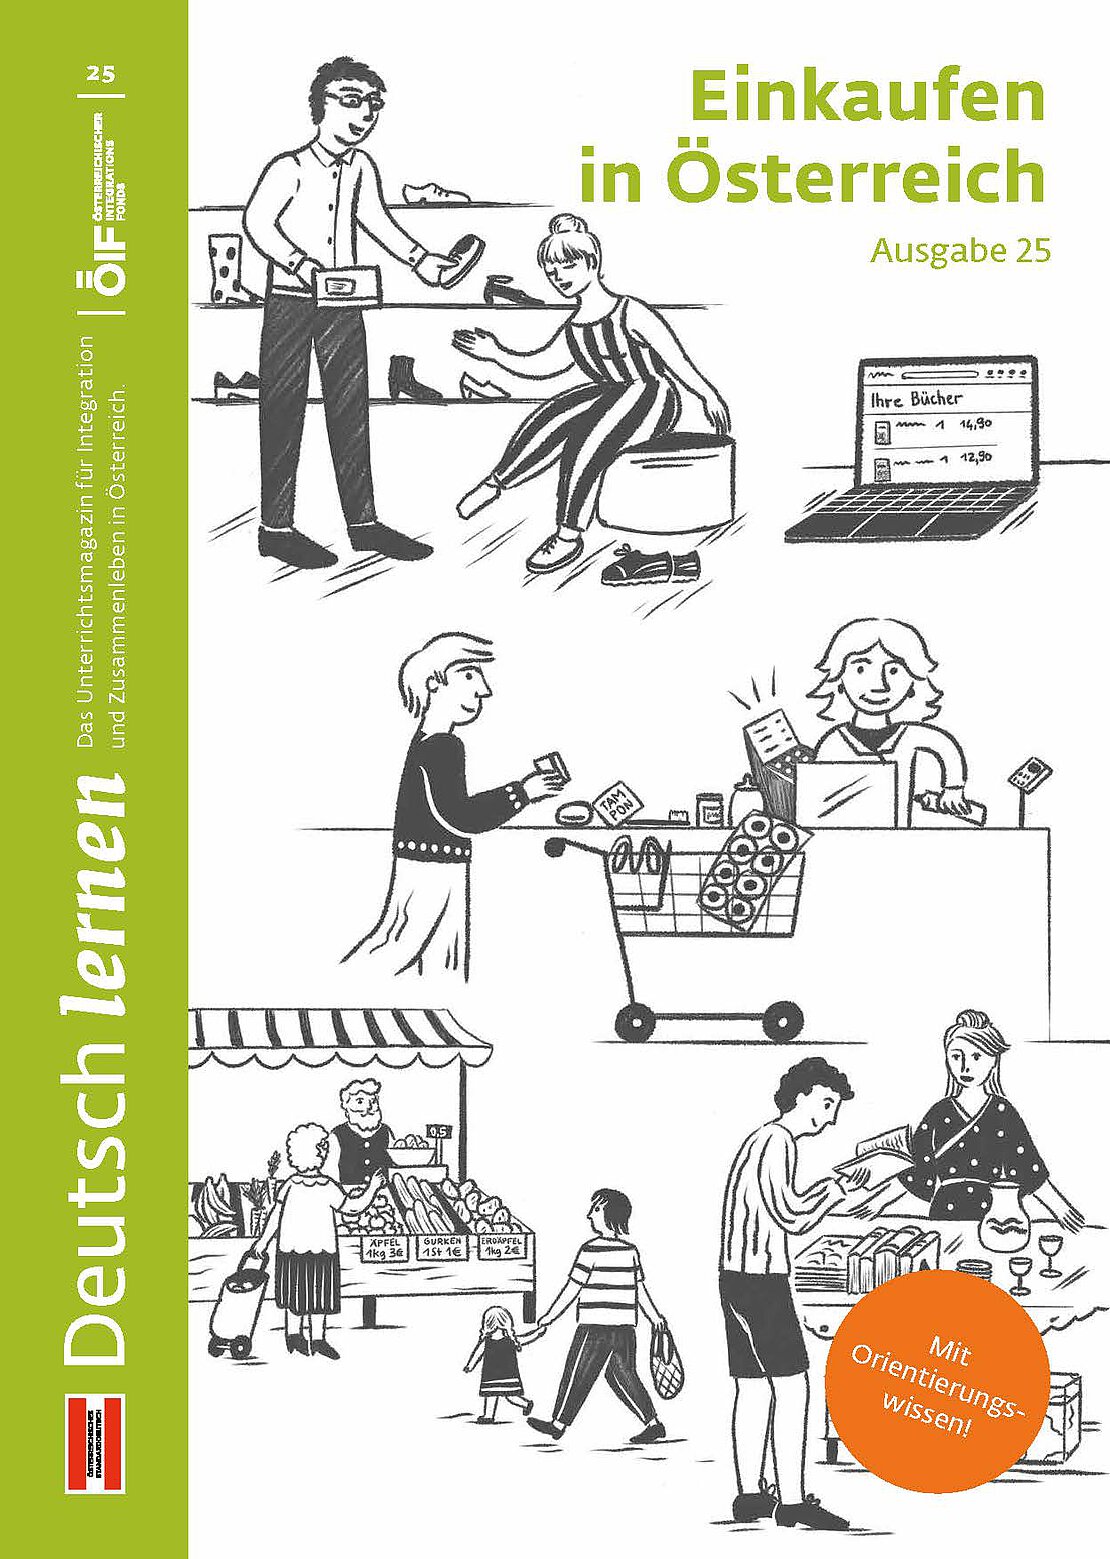 Coverbild der Ausgabe 25 des Unterrichtsmagazins Deutsch lernen mit dem Titel „Einkaufen in Österreich“.